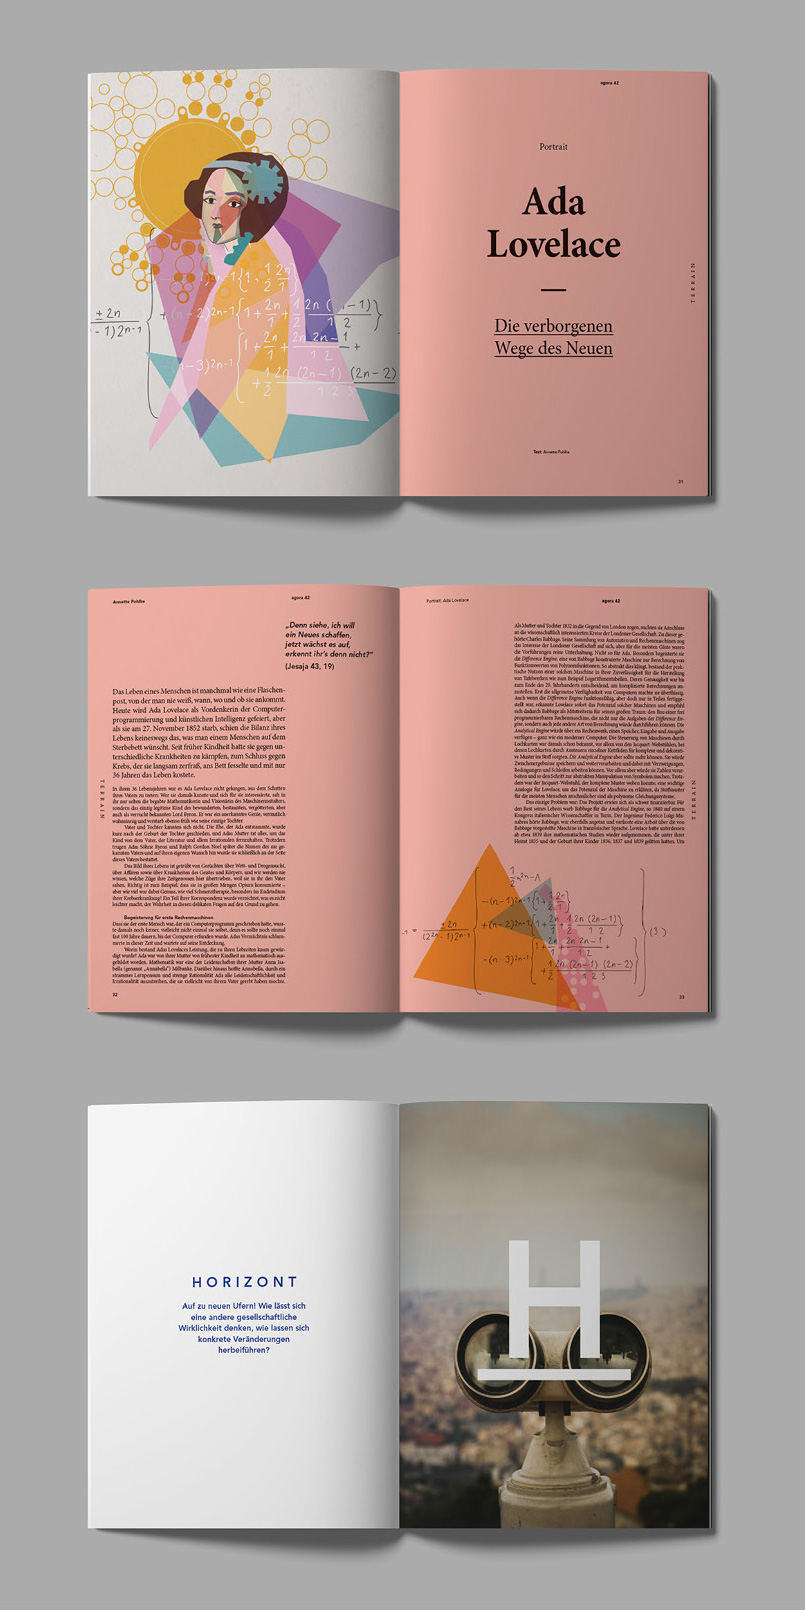 2DMBO-Studio-für-Gestaltung-Pforzheim-agora42-Philosophisch-magazine-design-editorial